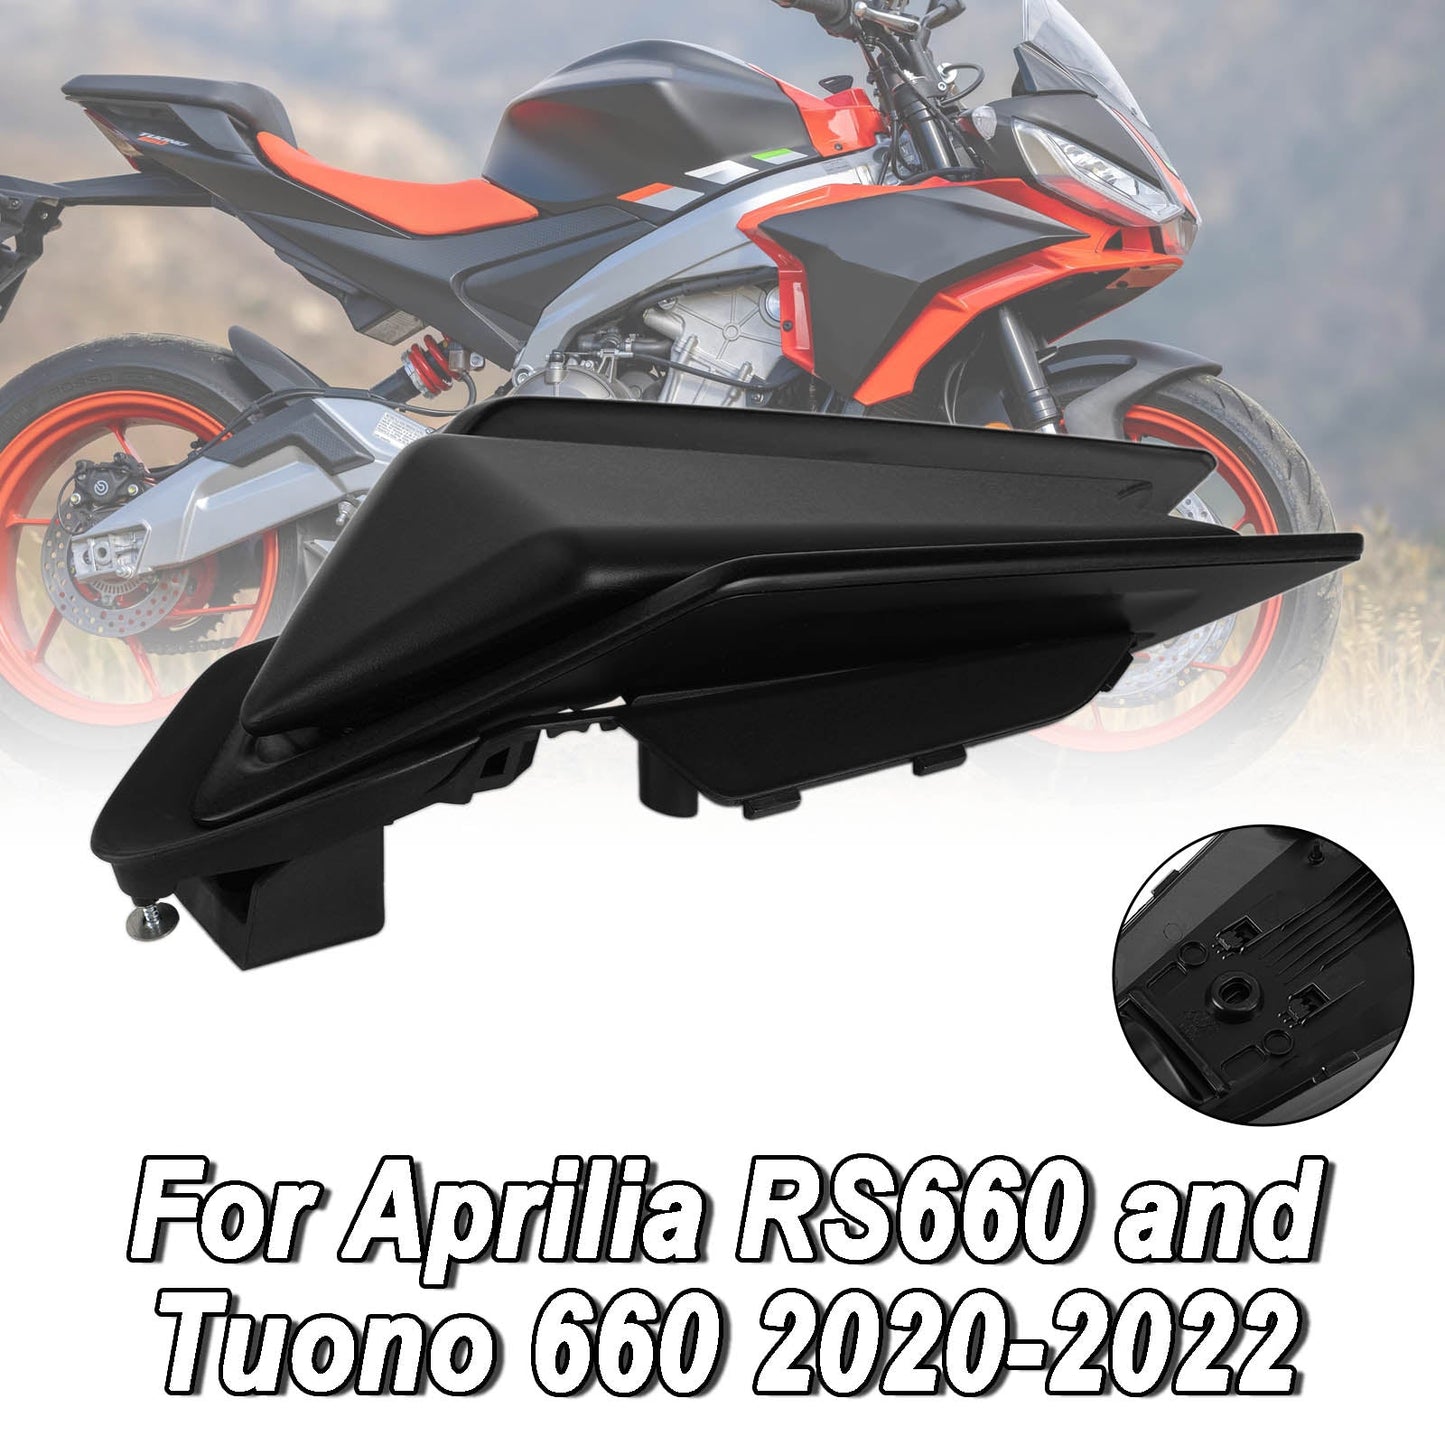 2020-2022 Aprilia RS660 RSV4 Tuono 660 Rear Cowl Tail FAIRING Cover Black